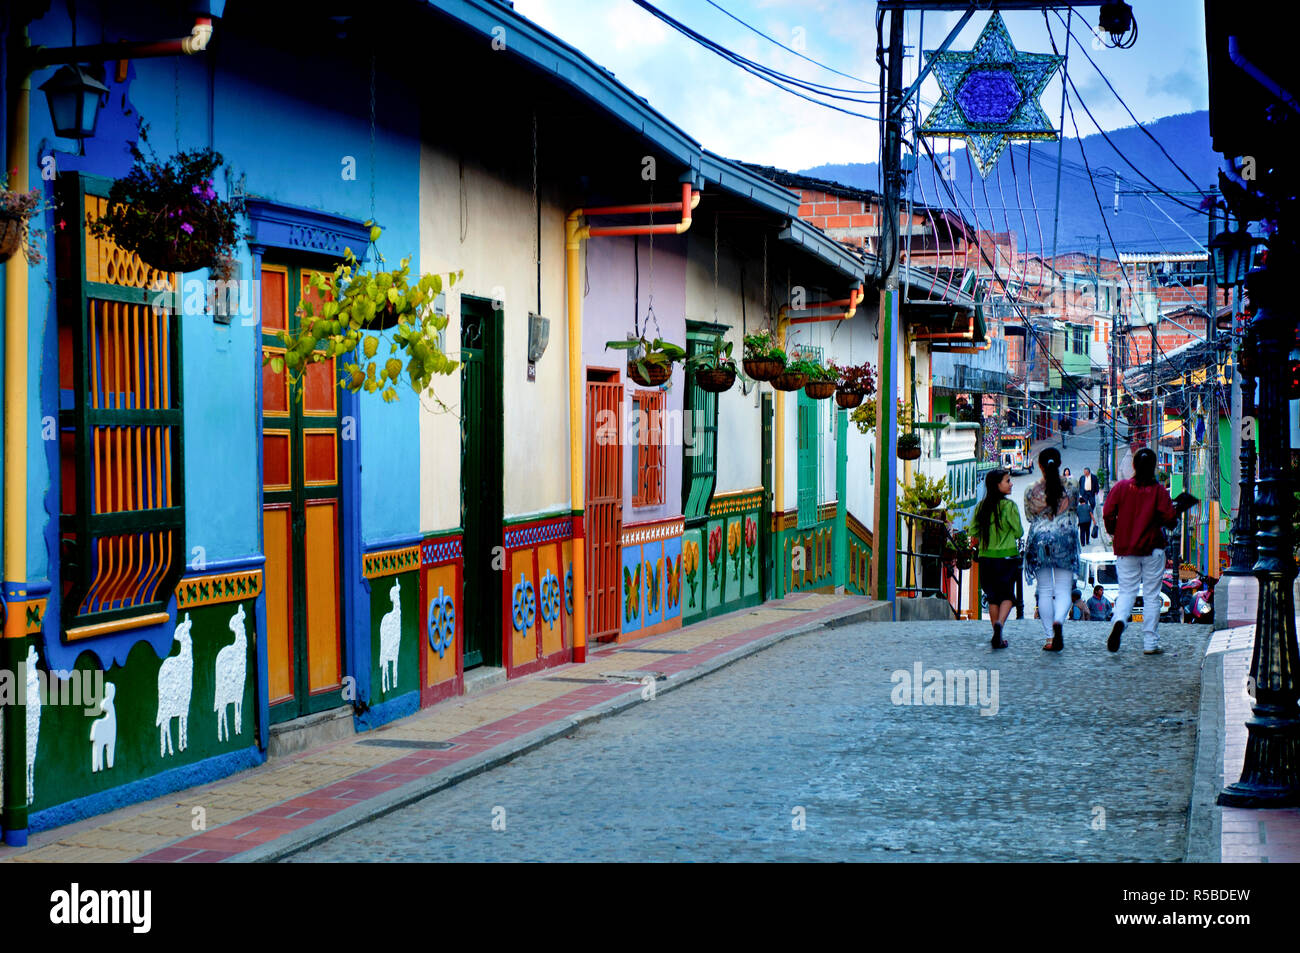 Guatape, Kolumbien, touristische Ziel außerhalb von Medellin, kleine Stadt, die für Ihre "Zocalos', die handgemachte gemalten Tafeln der Dreidimensionalen Kunst, des bunten Wänden sind bekannt Stockfoto